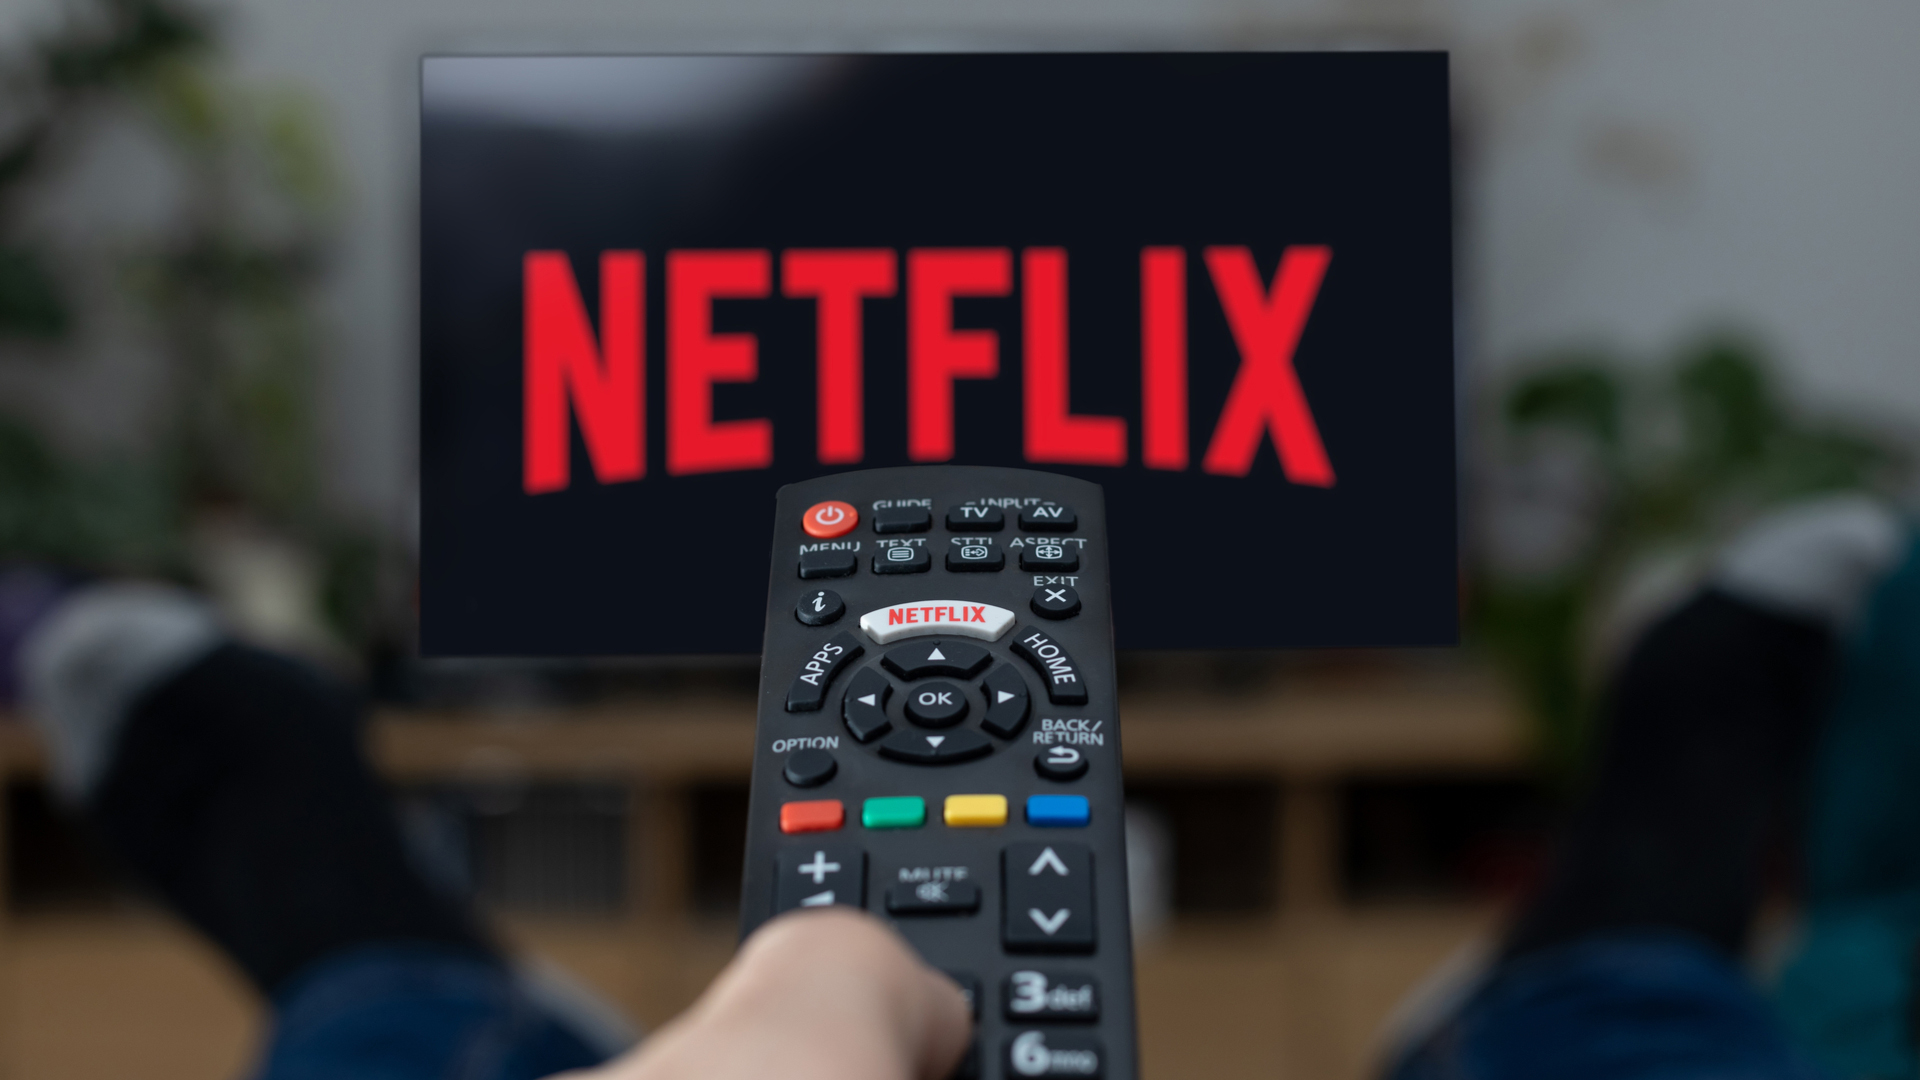 Рекламное изображение человека, который смотрит Netflix по телевизору с пультом в левой руке